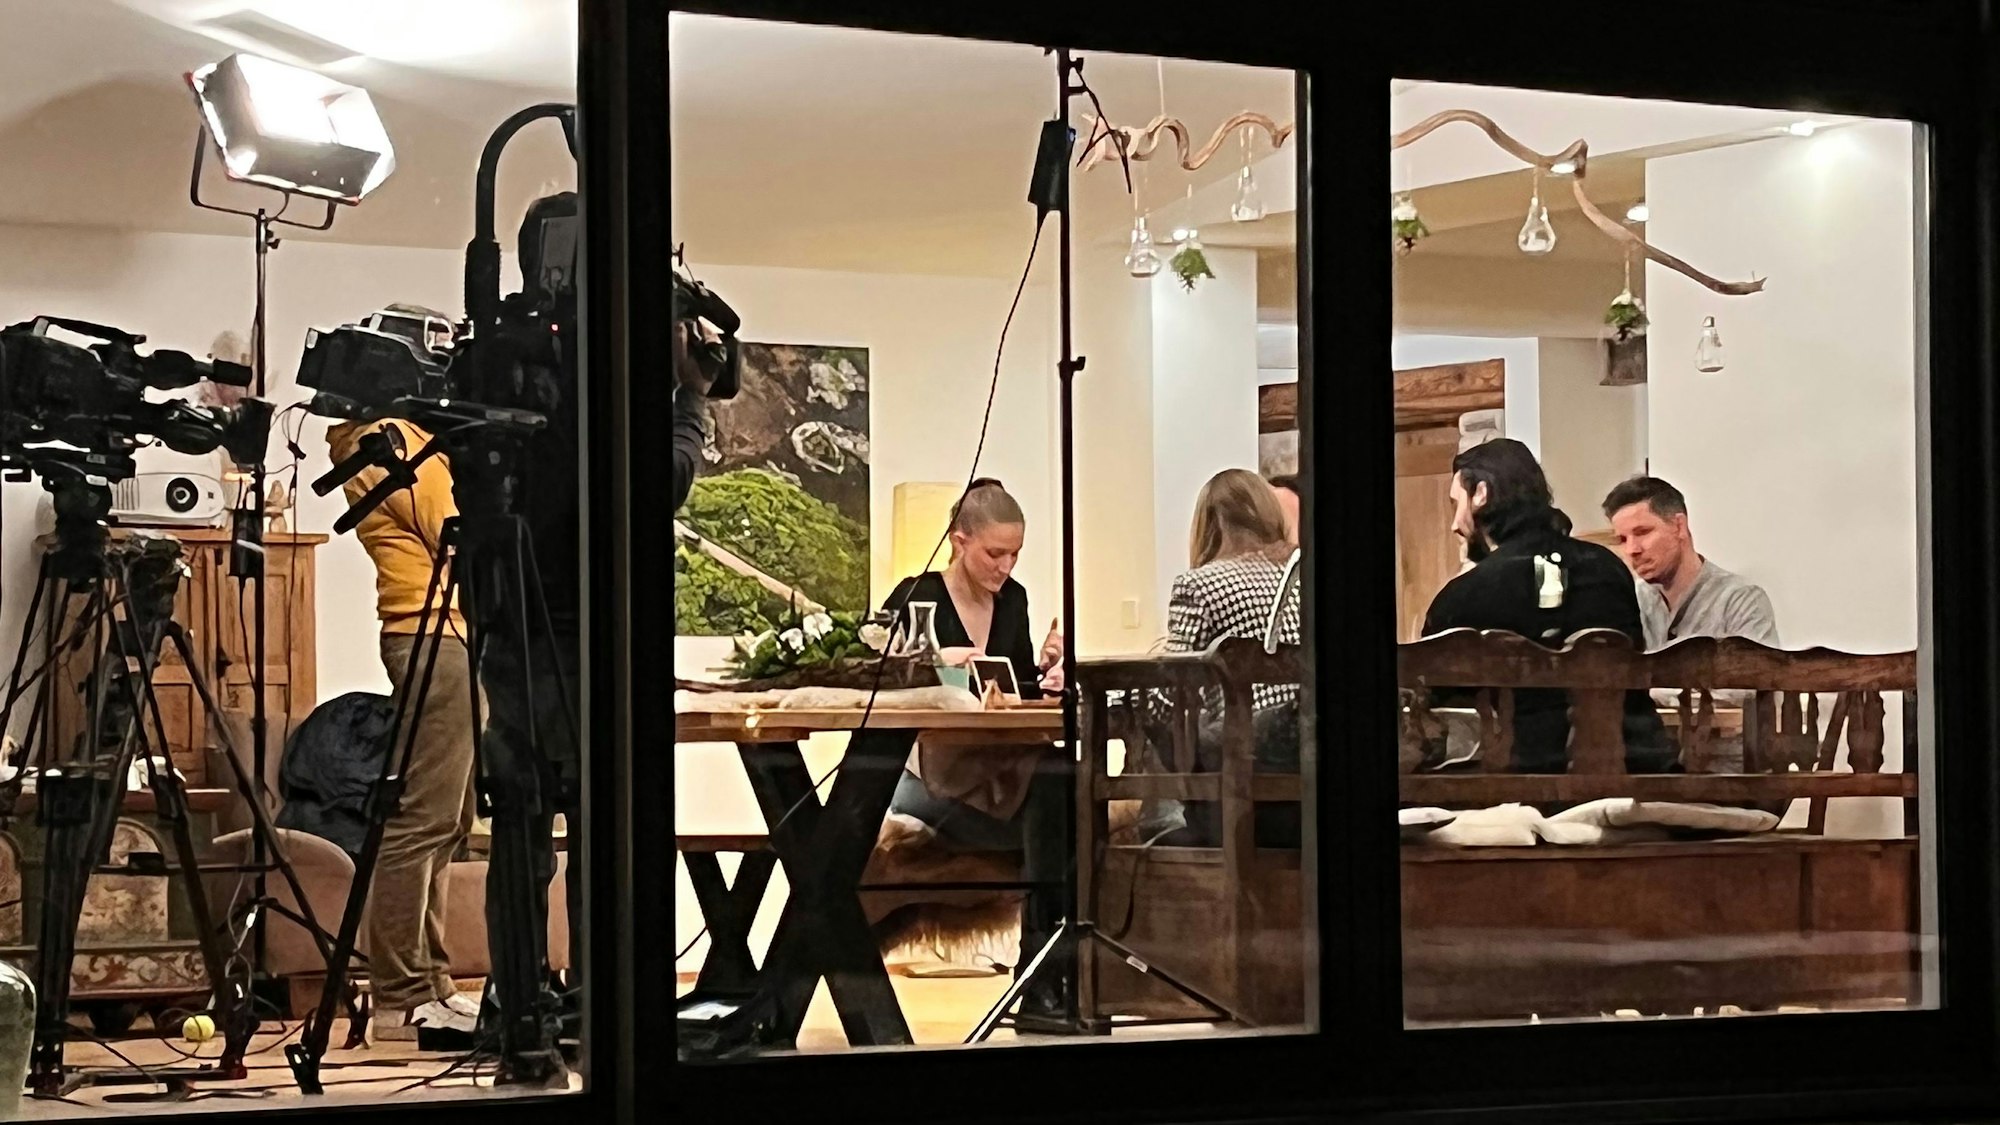 An einem Tisch sitzen mehrere Personen daneben stehen zwei Personen mit einer Kamera und filmen den Tisch.